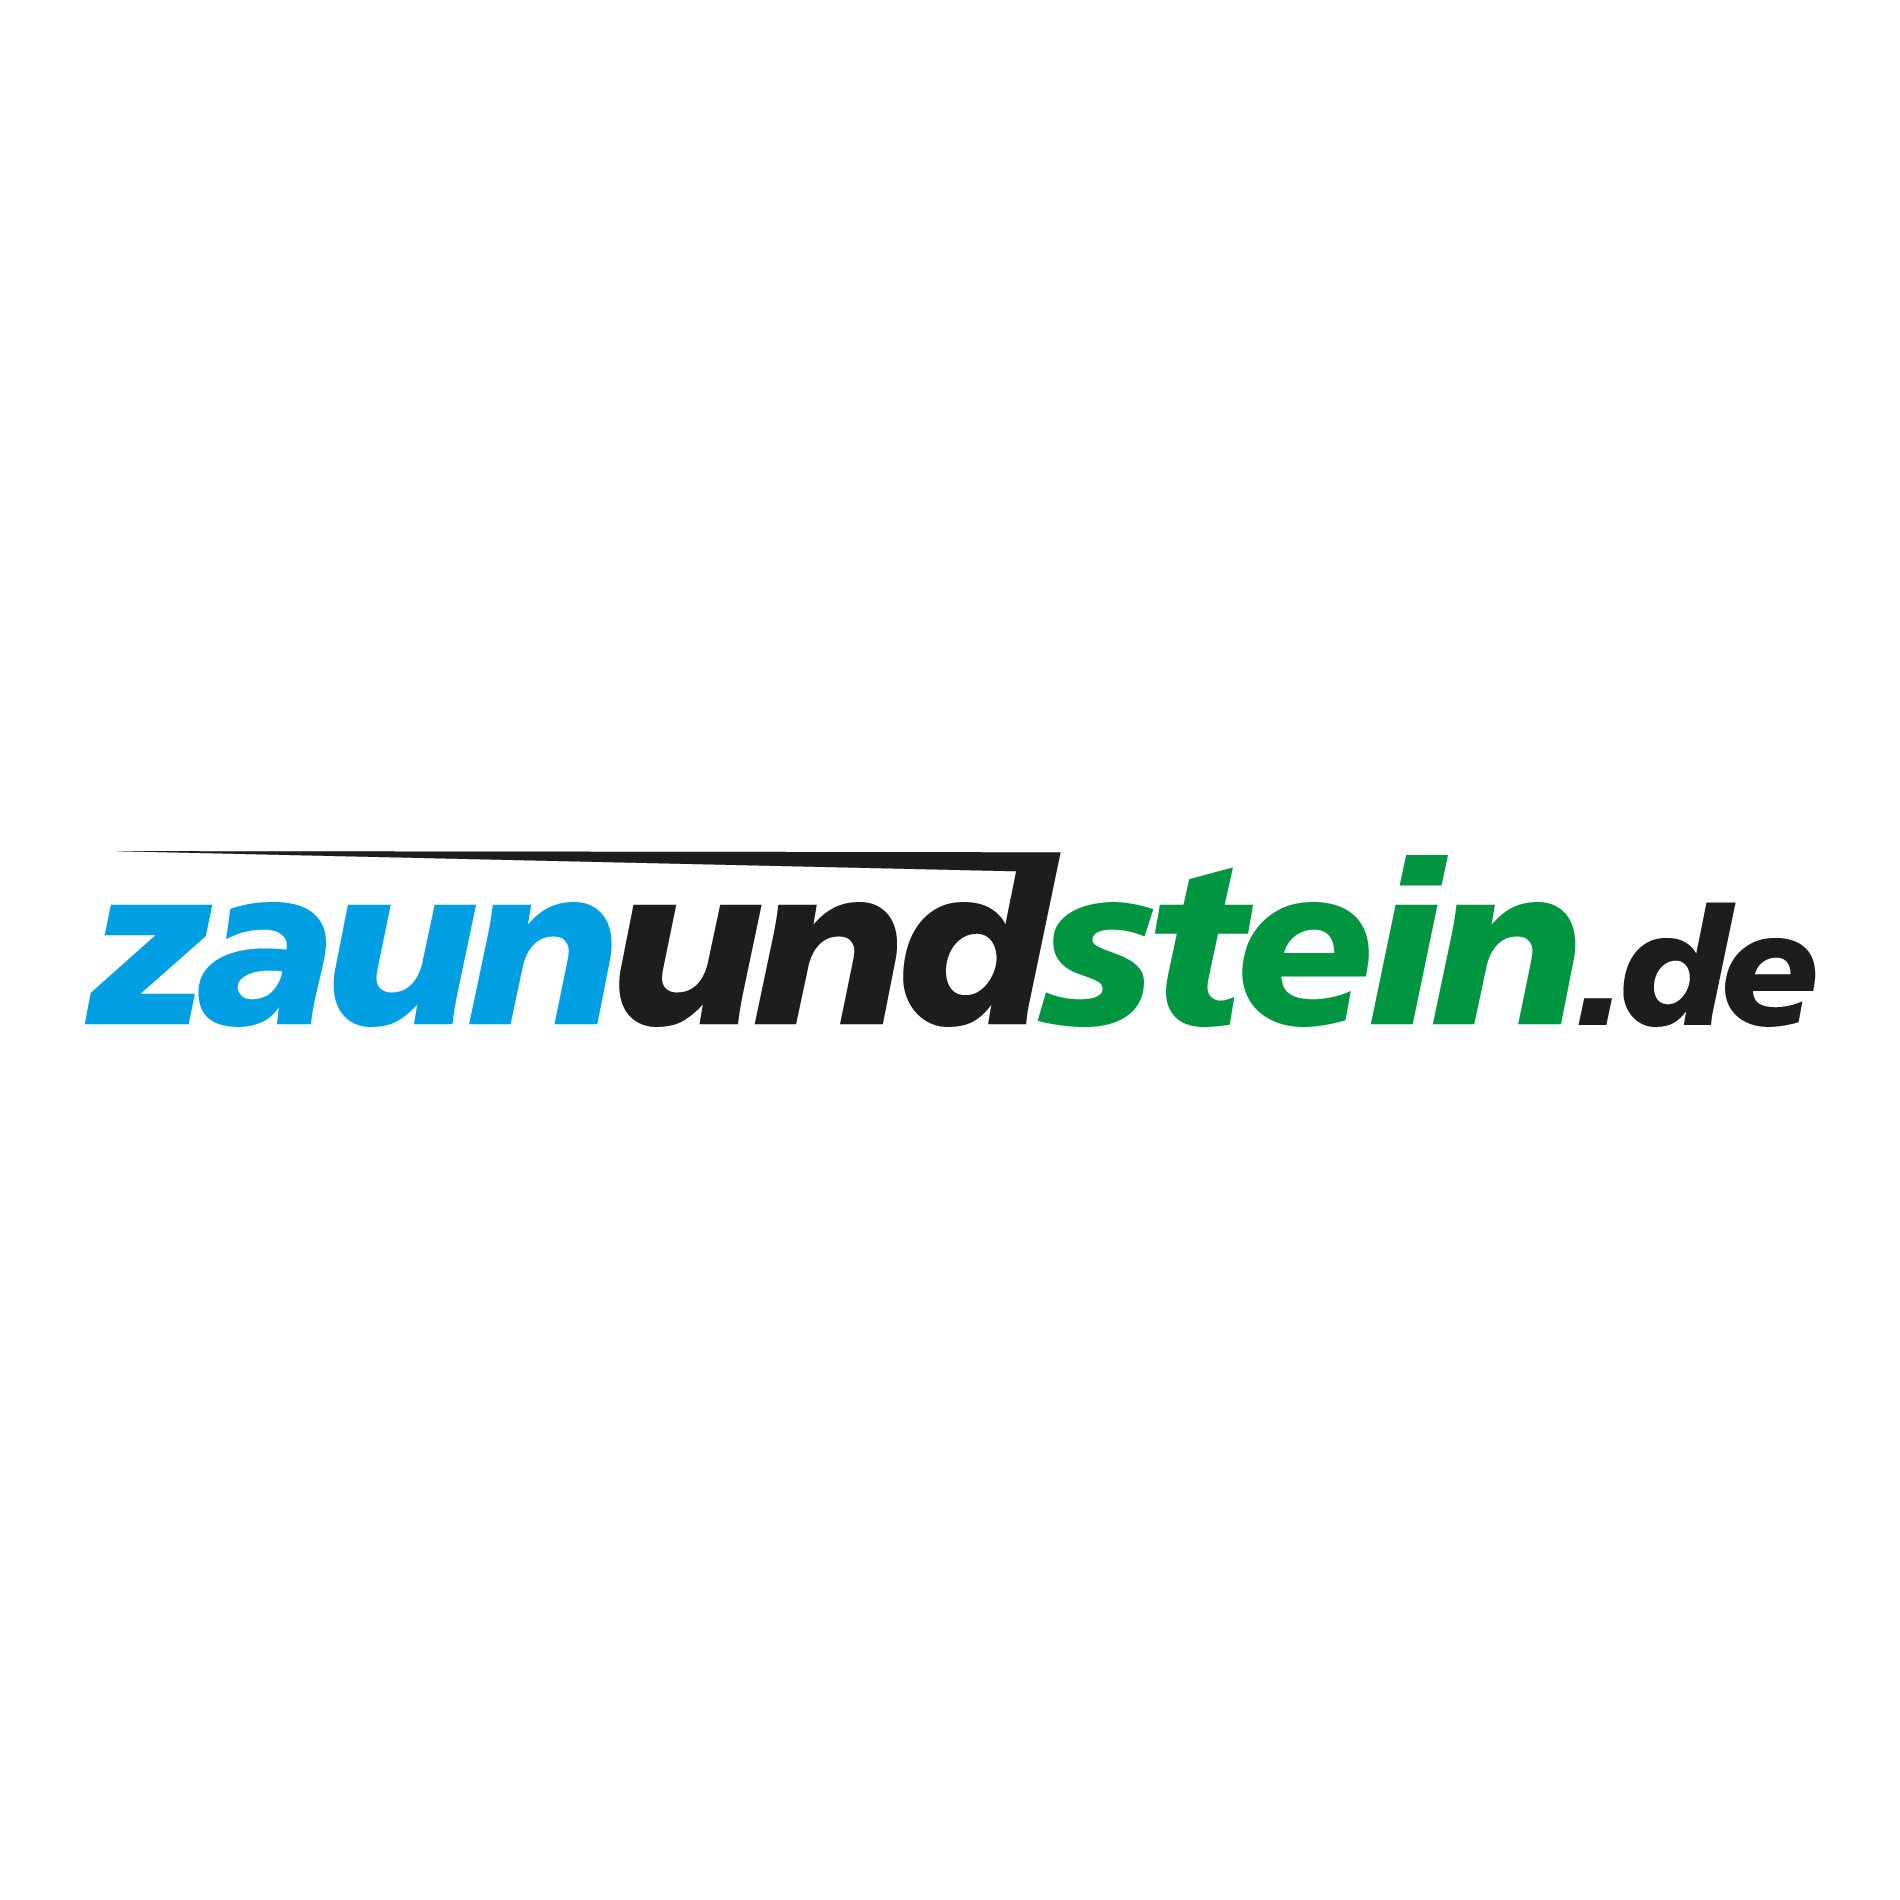 Logo Zaunundstein.de